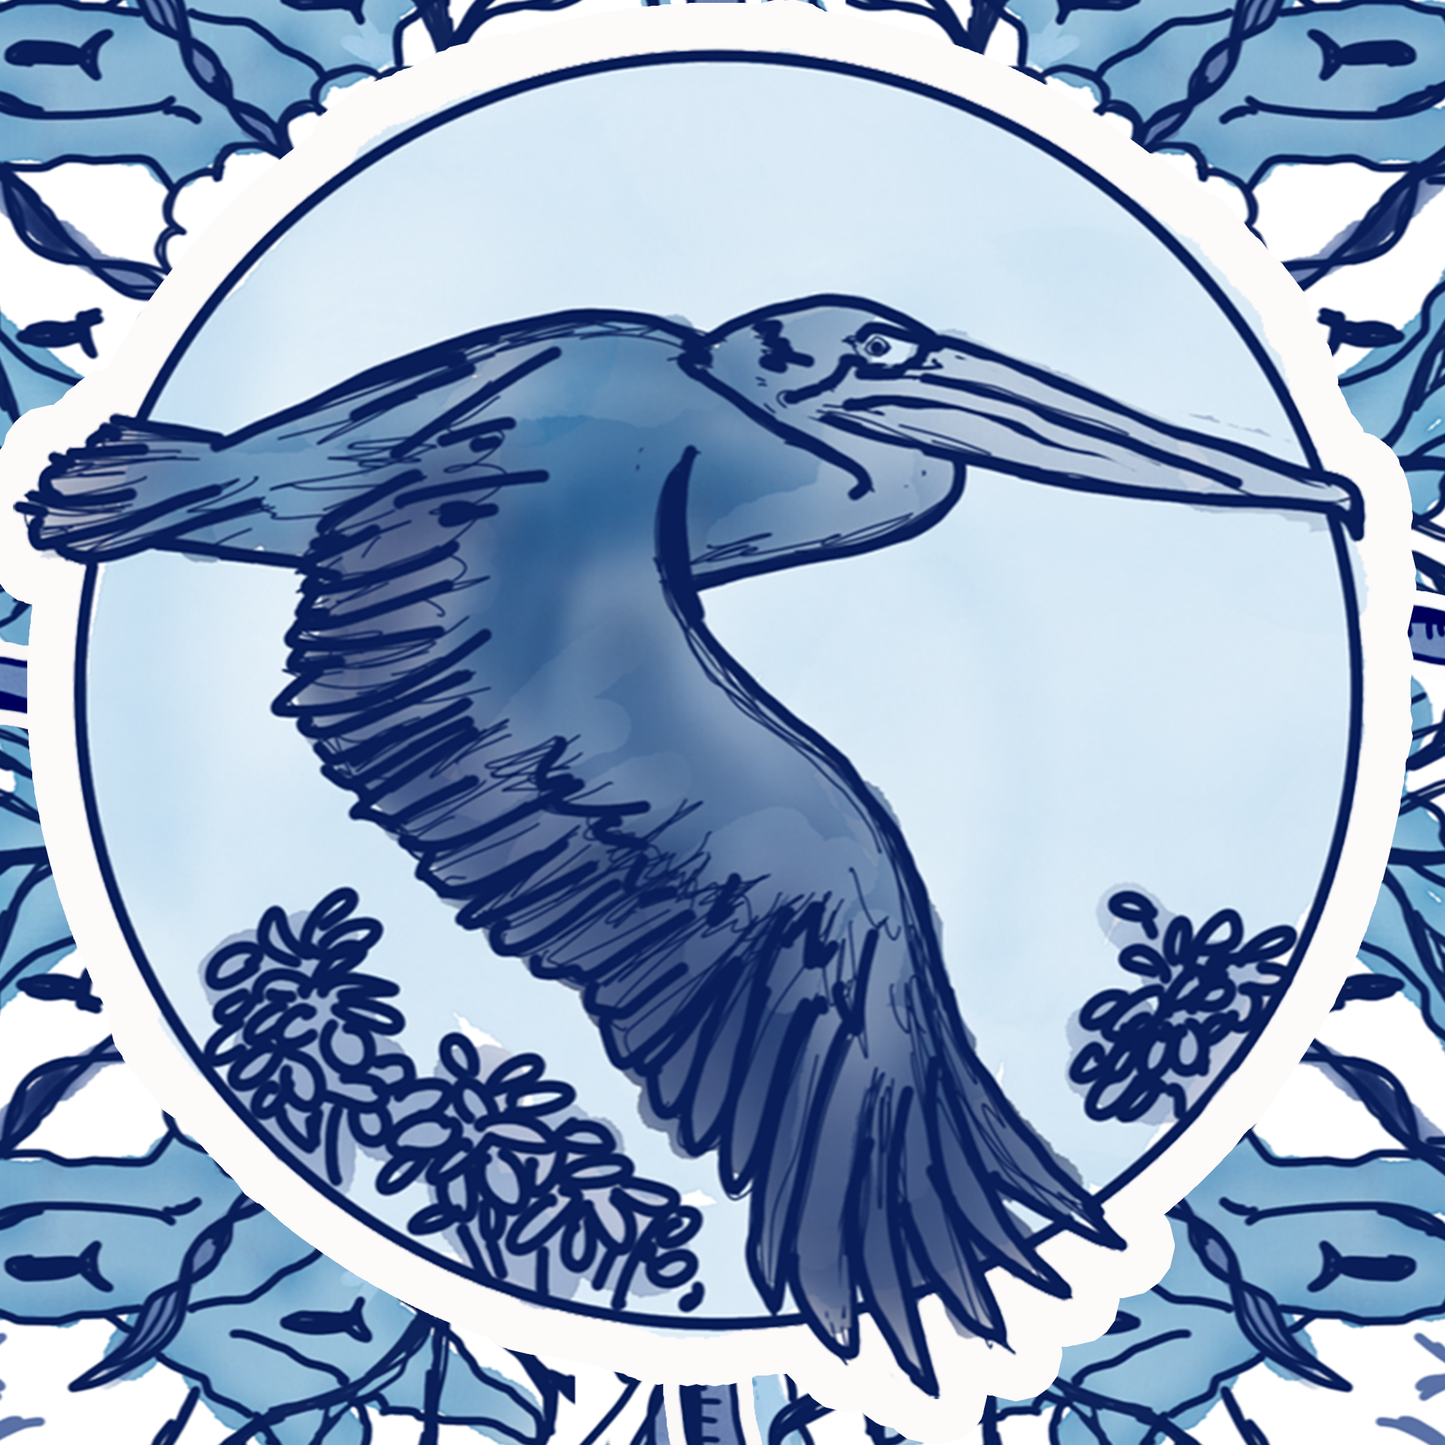 Delft Blue Pelican Blue and White Fine Coastal Art Canvas Print